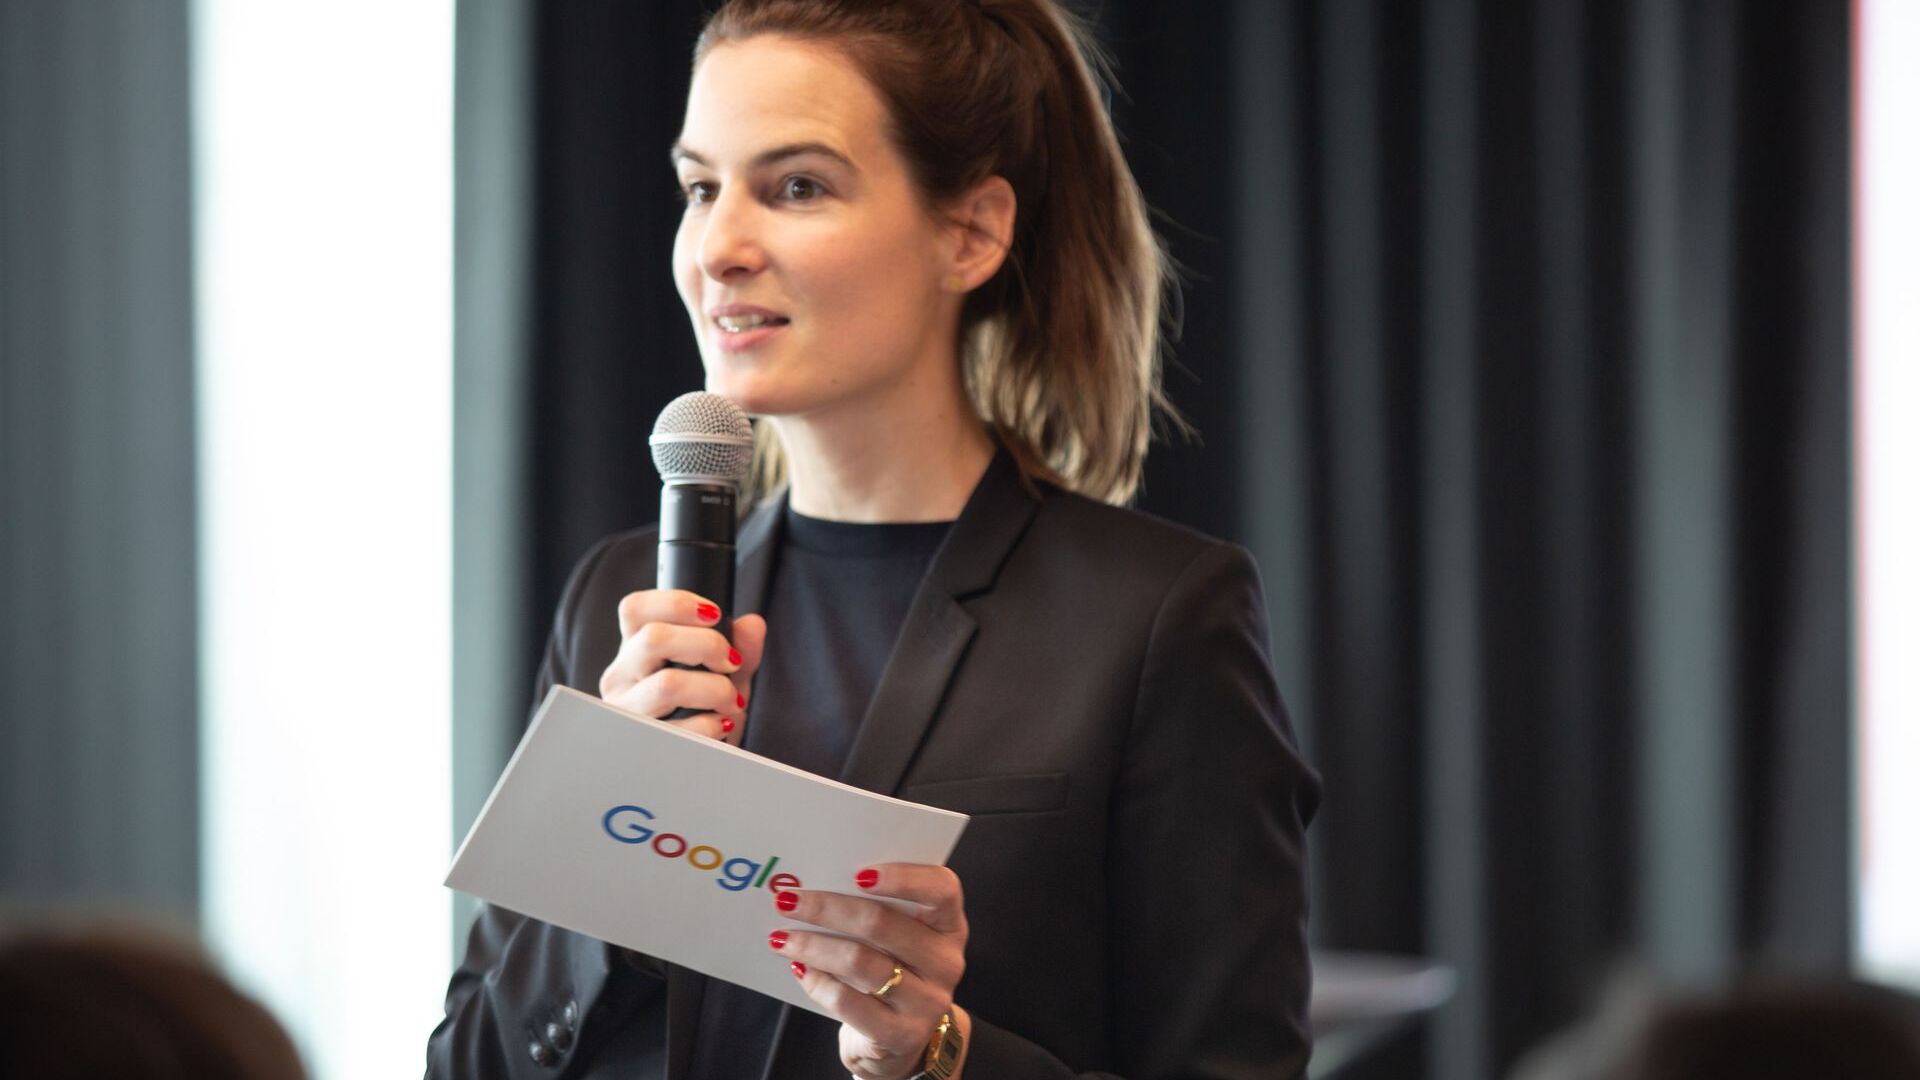 Google İsviçre medya ekibi Pia De Carli, 27 Haziran 2022'de Zürih'te yeni Google Campus Europaallee'nin resmi açılışına katıldı